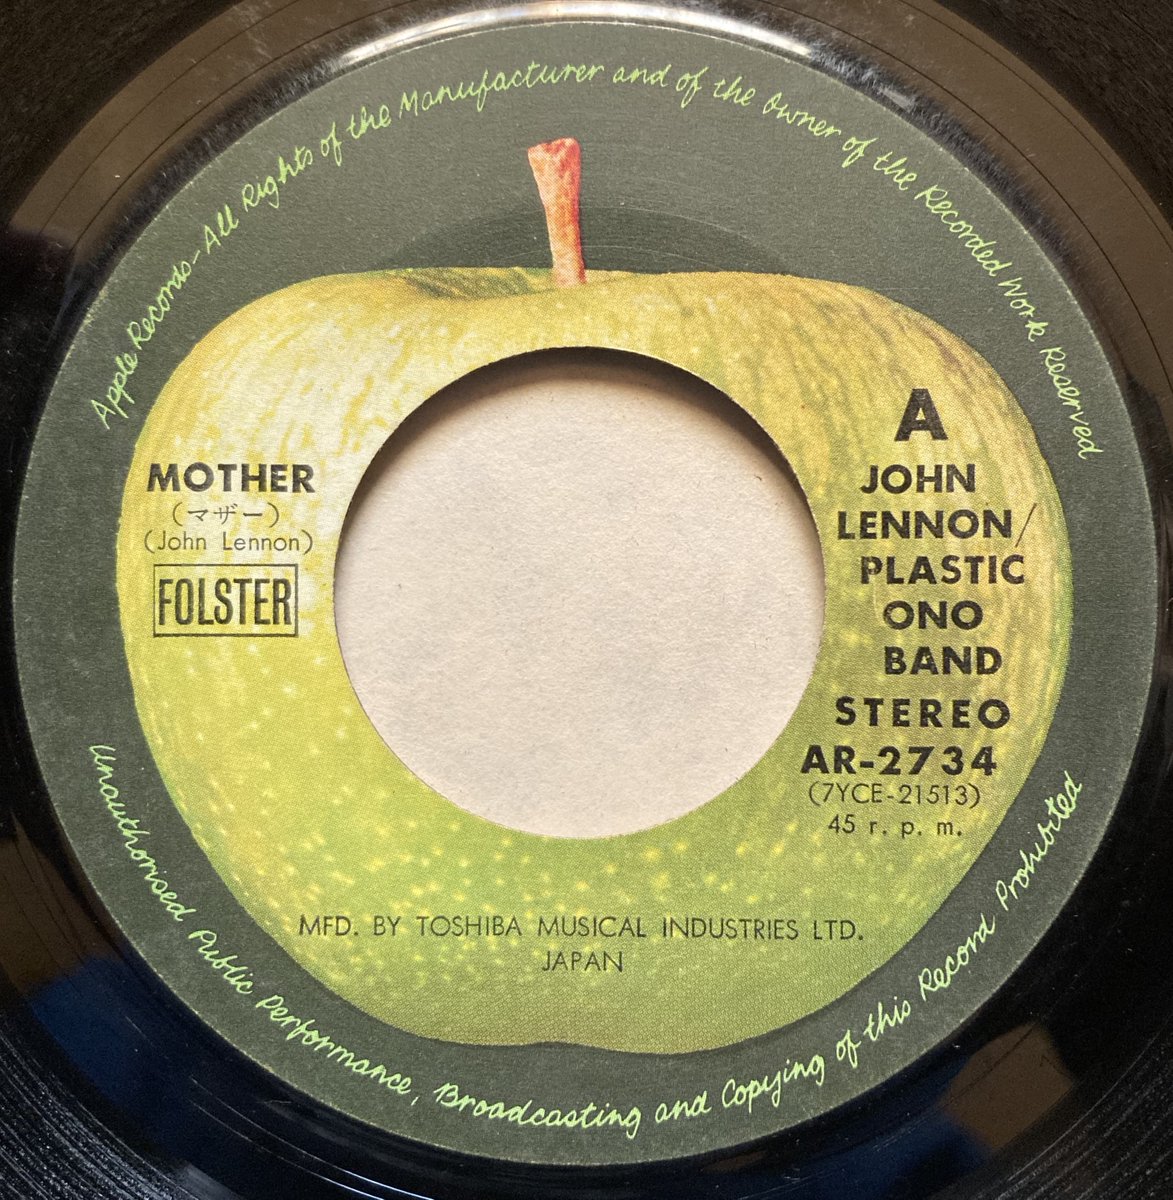 フィル・スペクターが
プロデュースした
ジョン・レノン
70年のシングル「マザー」で
🌞おはようございます。

#PhilSpector
Mother (Remastered 2010) · 
#JohnLennon   
Plastic Ono Band
youtu.be/3D0nMzHjMR8?si